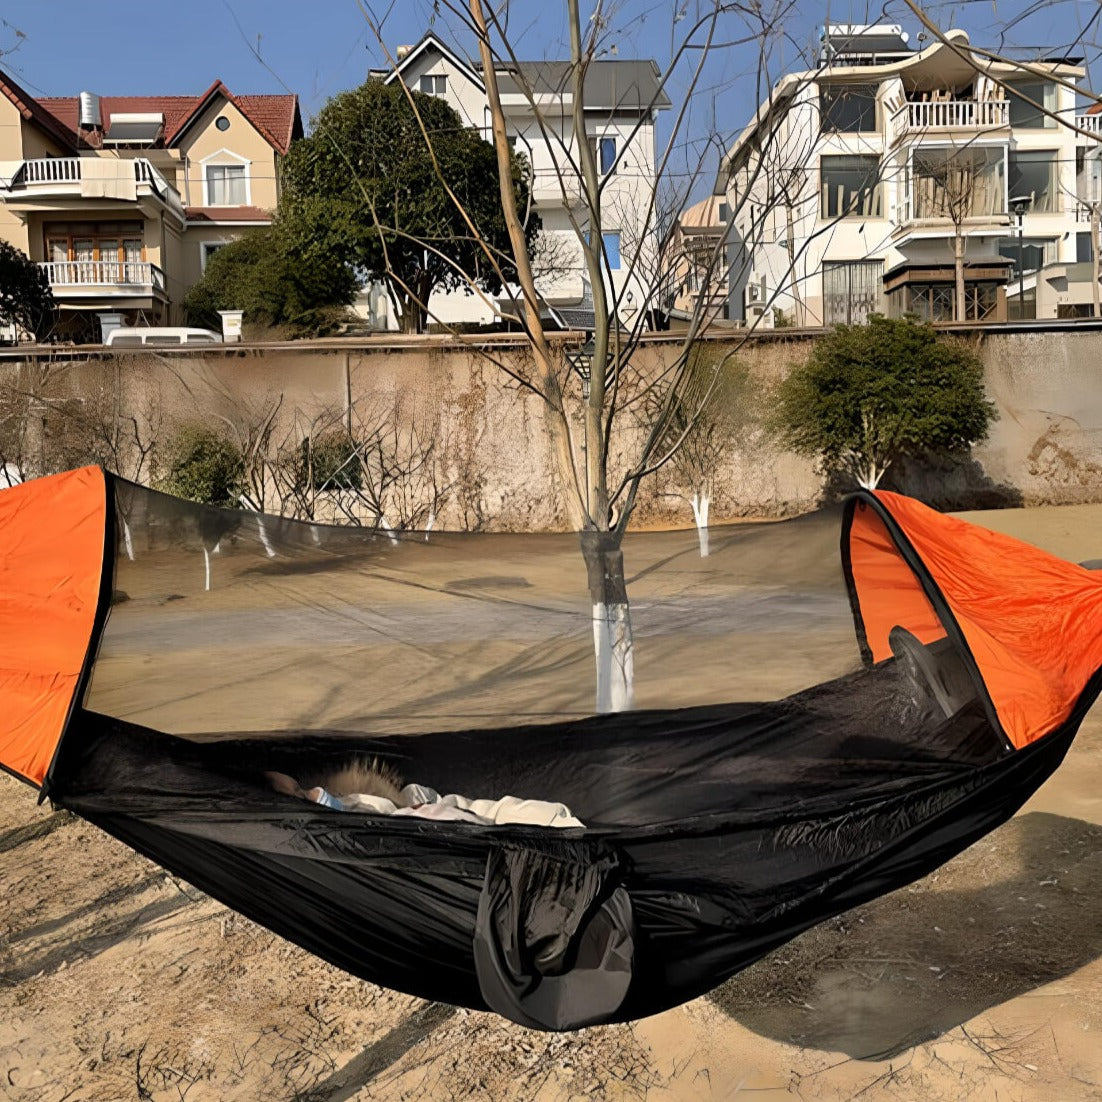    a-girl-sleeping-on-a-tent-hammock